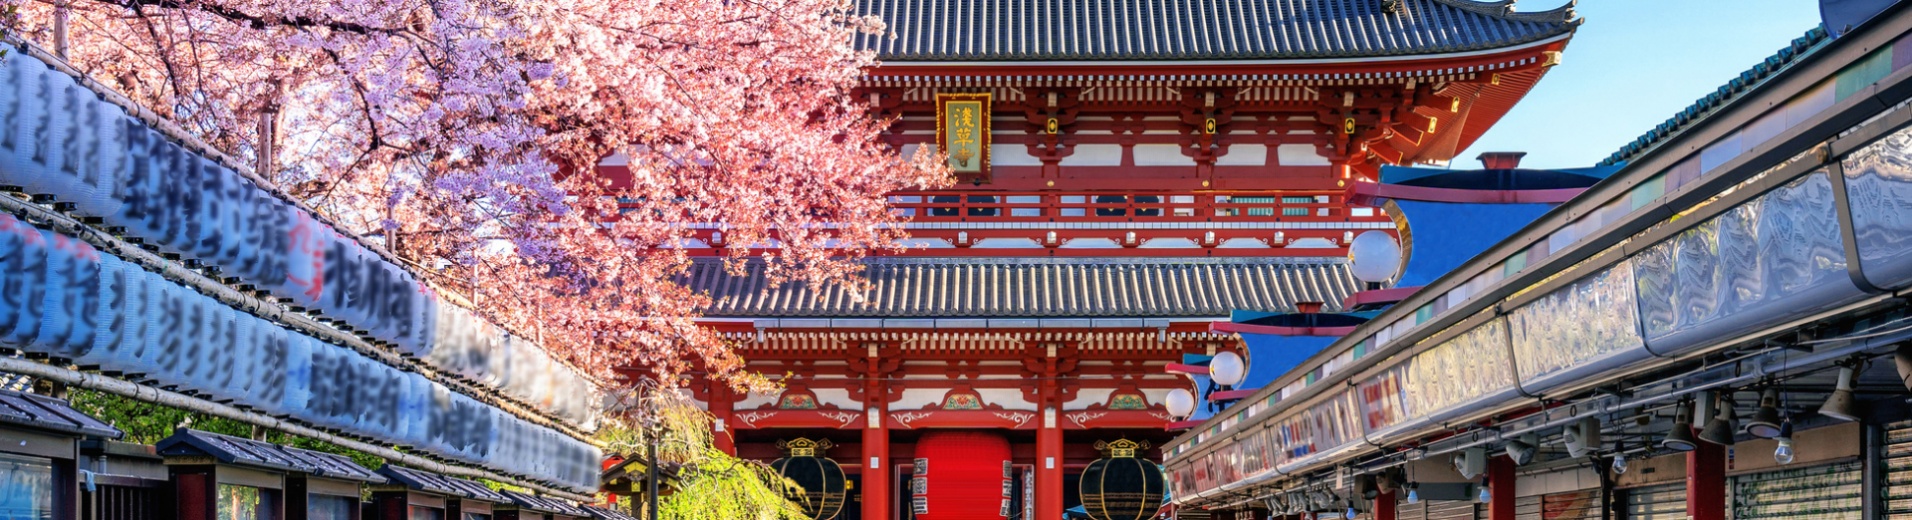 Cerisier en fleurs, Temple Asakusa,Tokyo, Japon